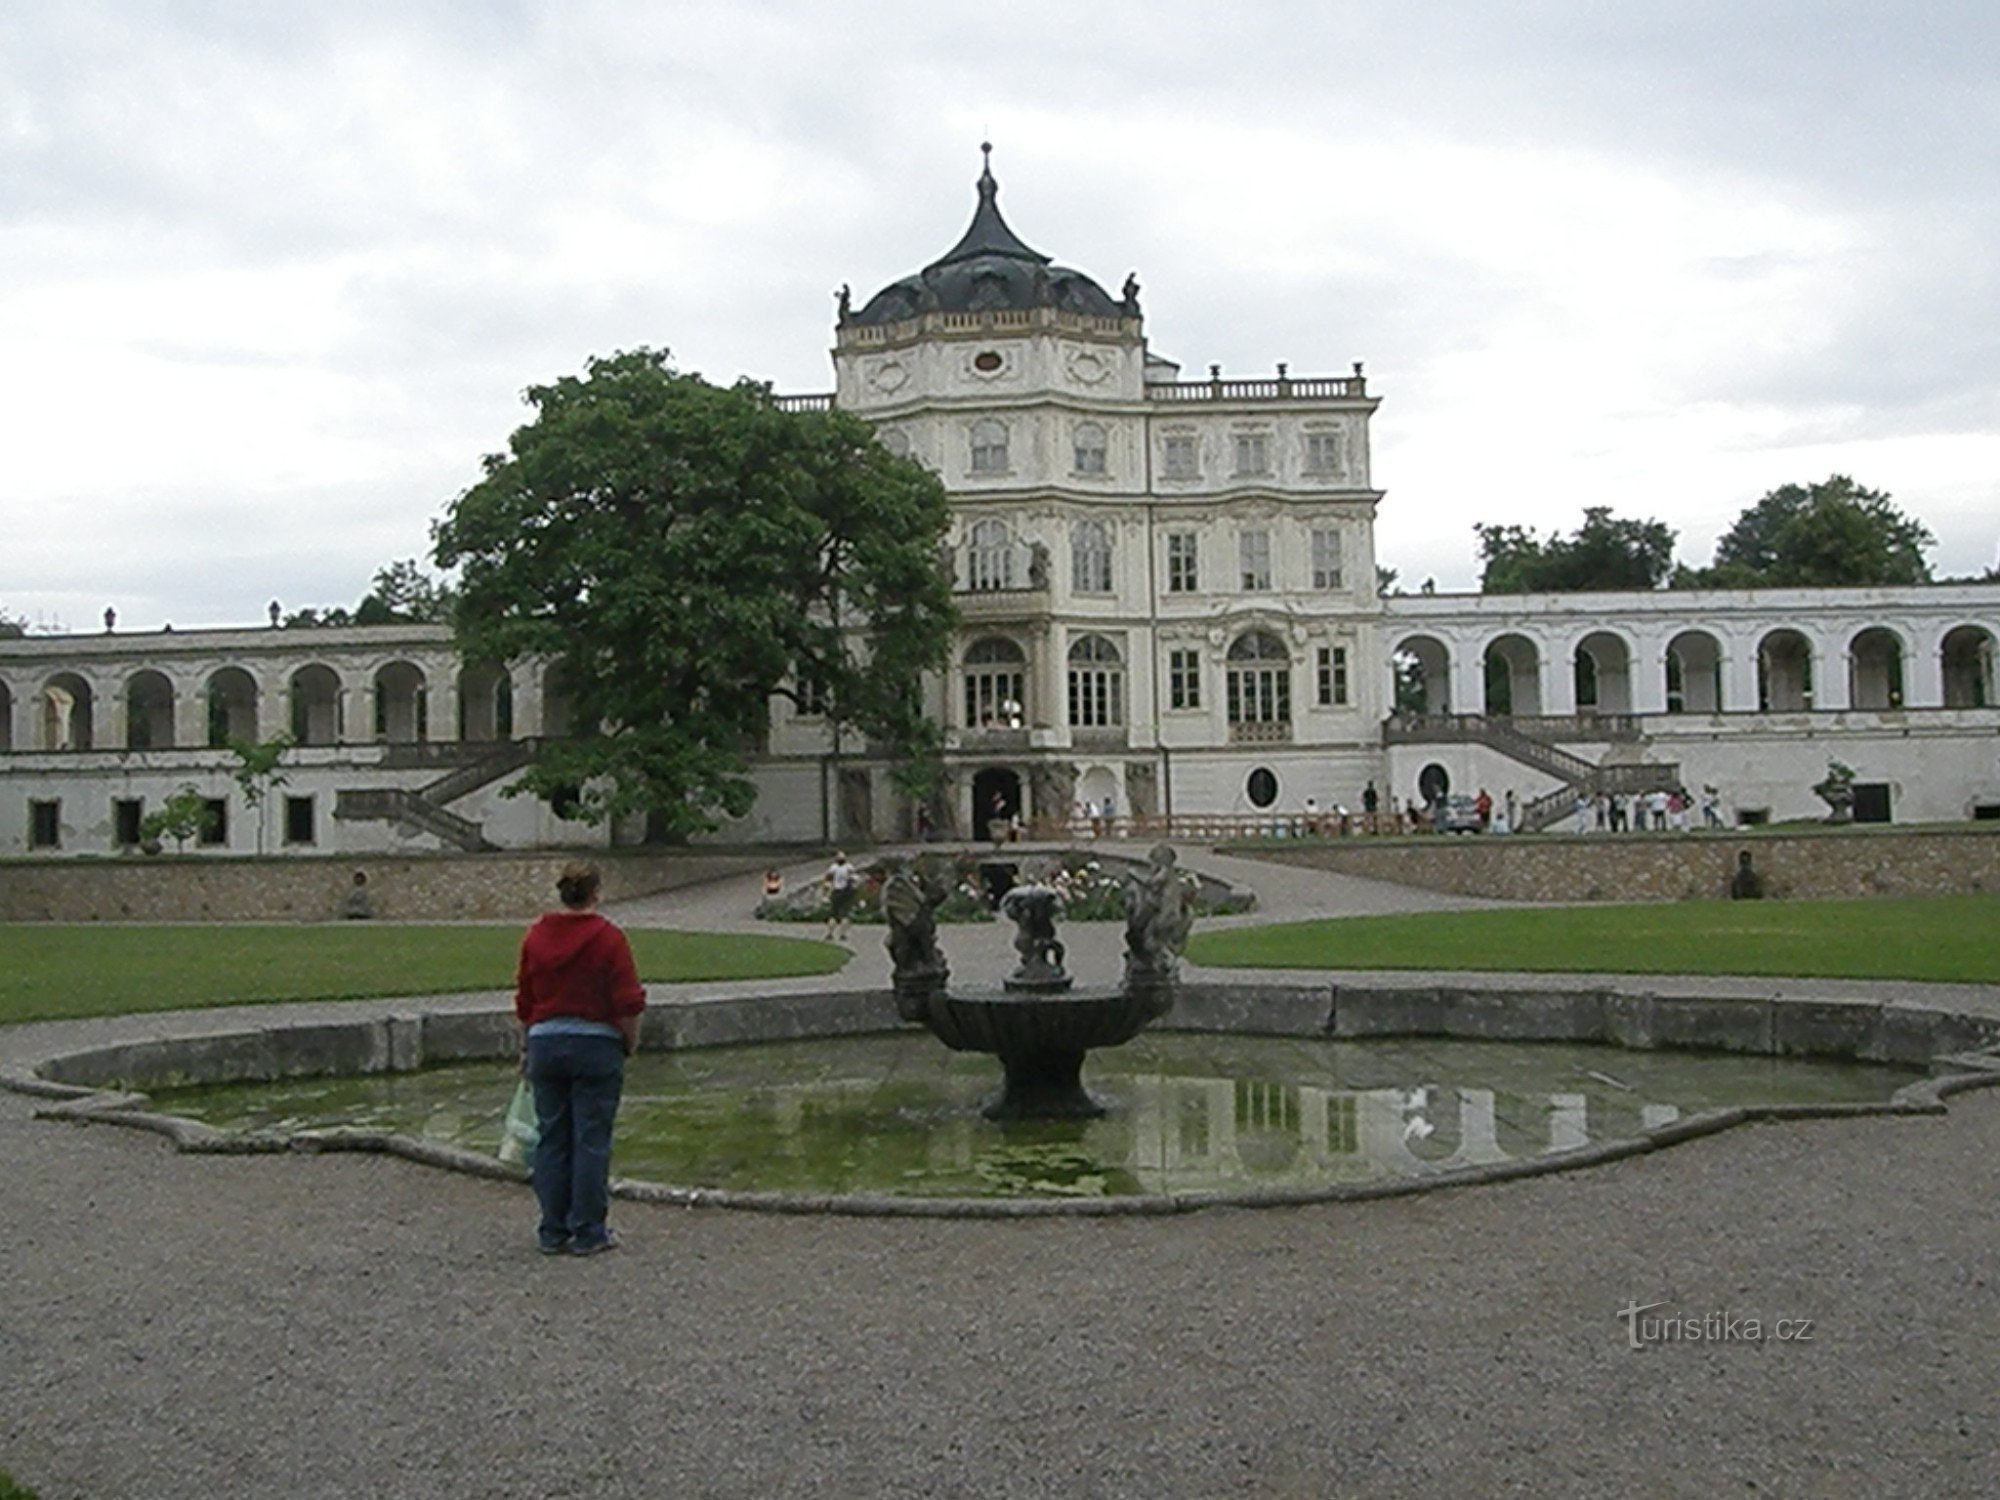 Lâu đài baroque địa phương với các hồ bơi và ao nước có lẽ hơi gợi nhớ đến một Versailles nhỏ